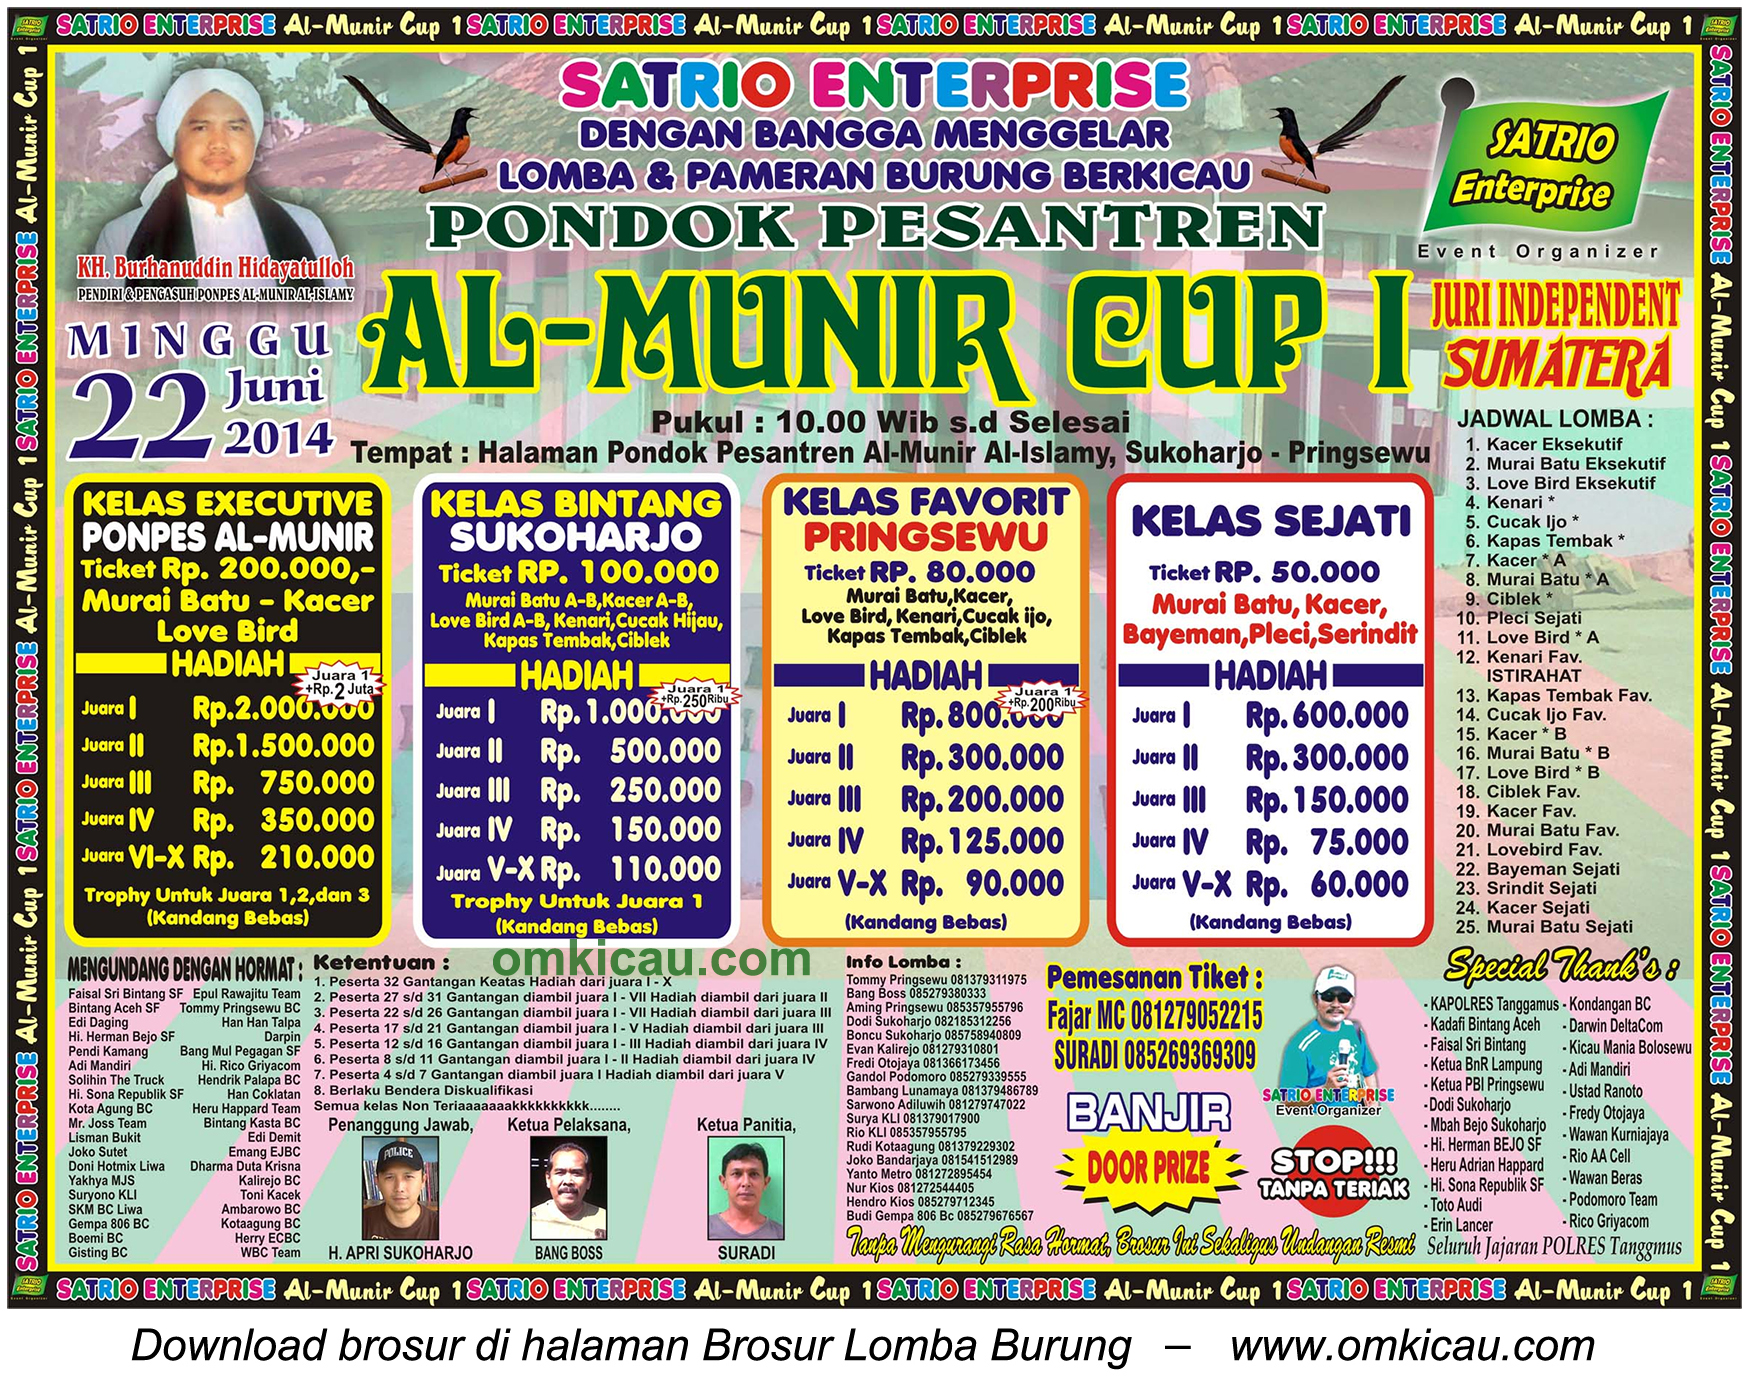 Lomba Burung Al Munir Cup 1, Pringsewu, 22 Juni 2014